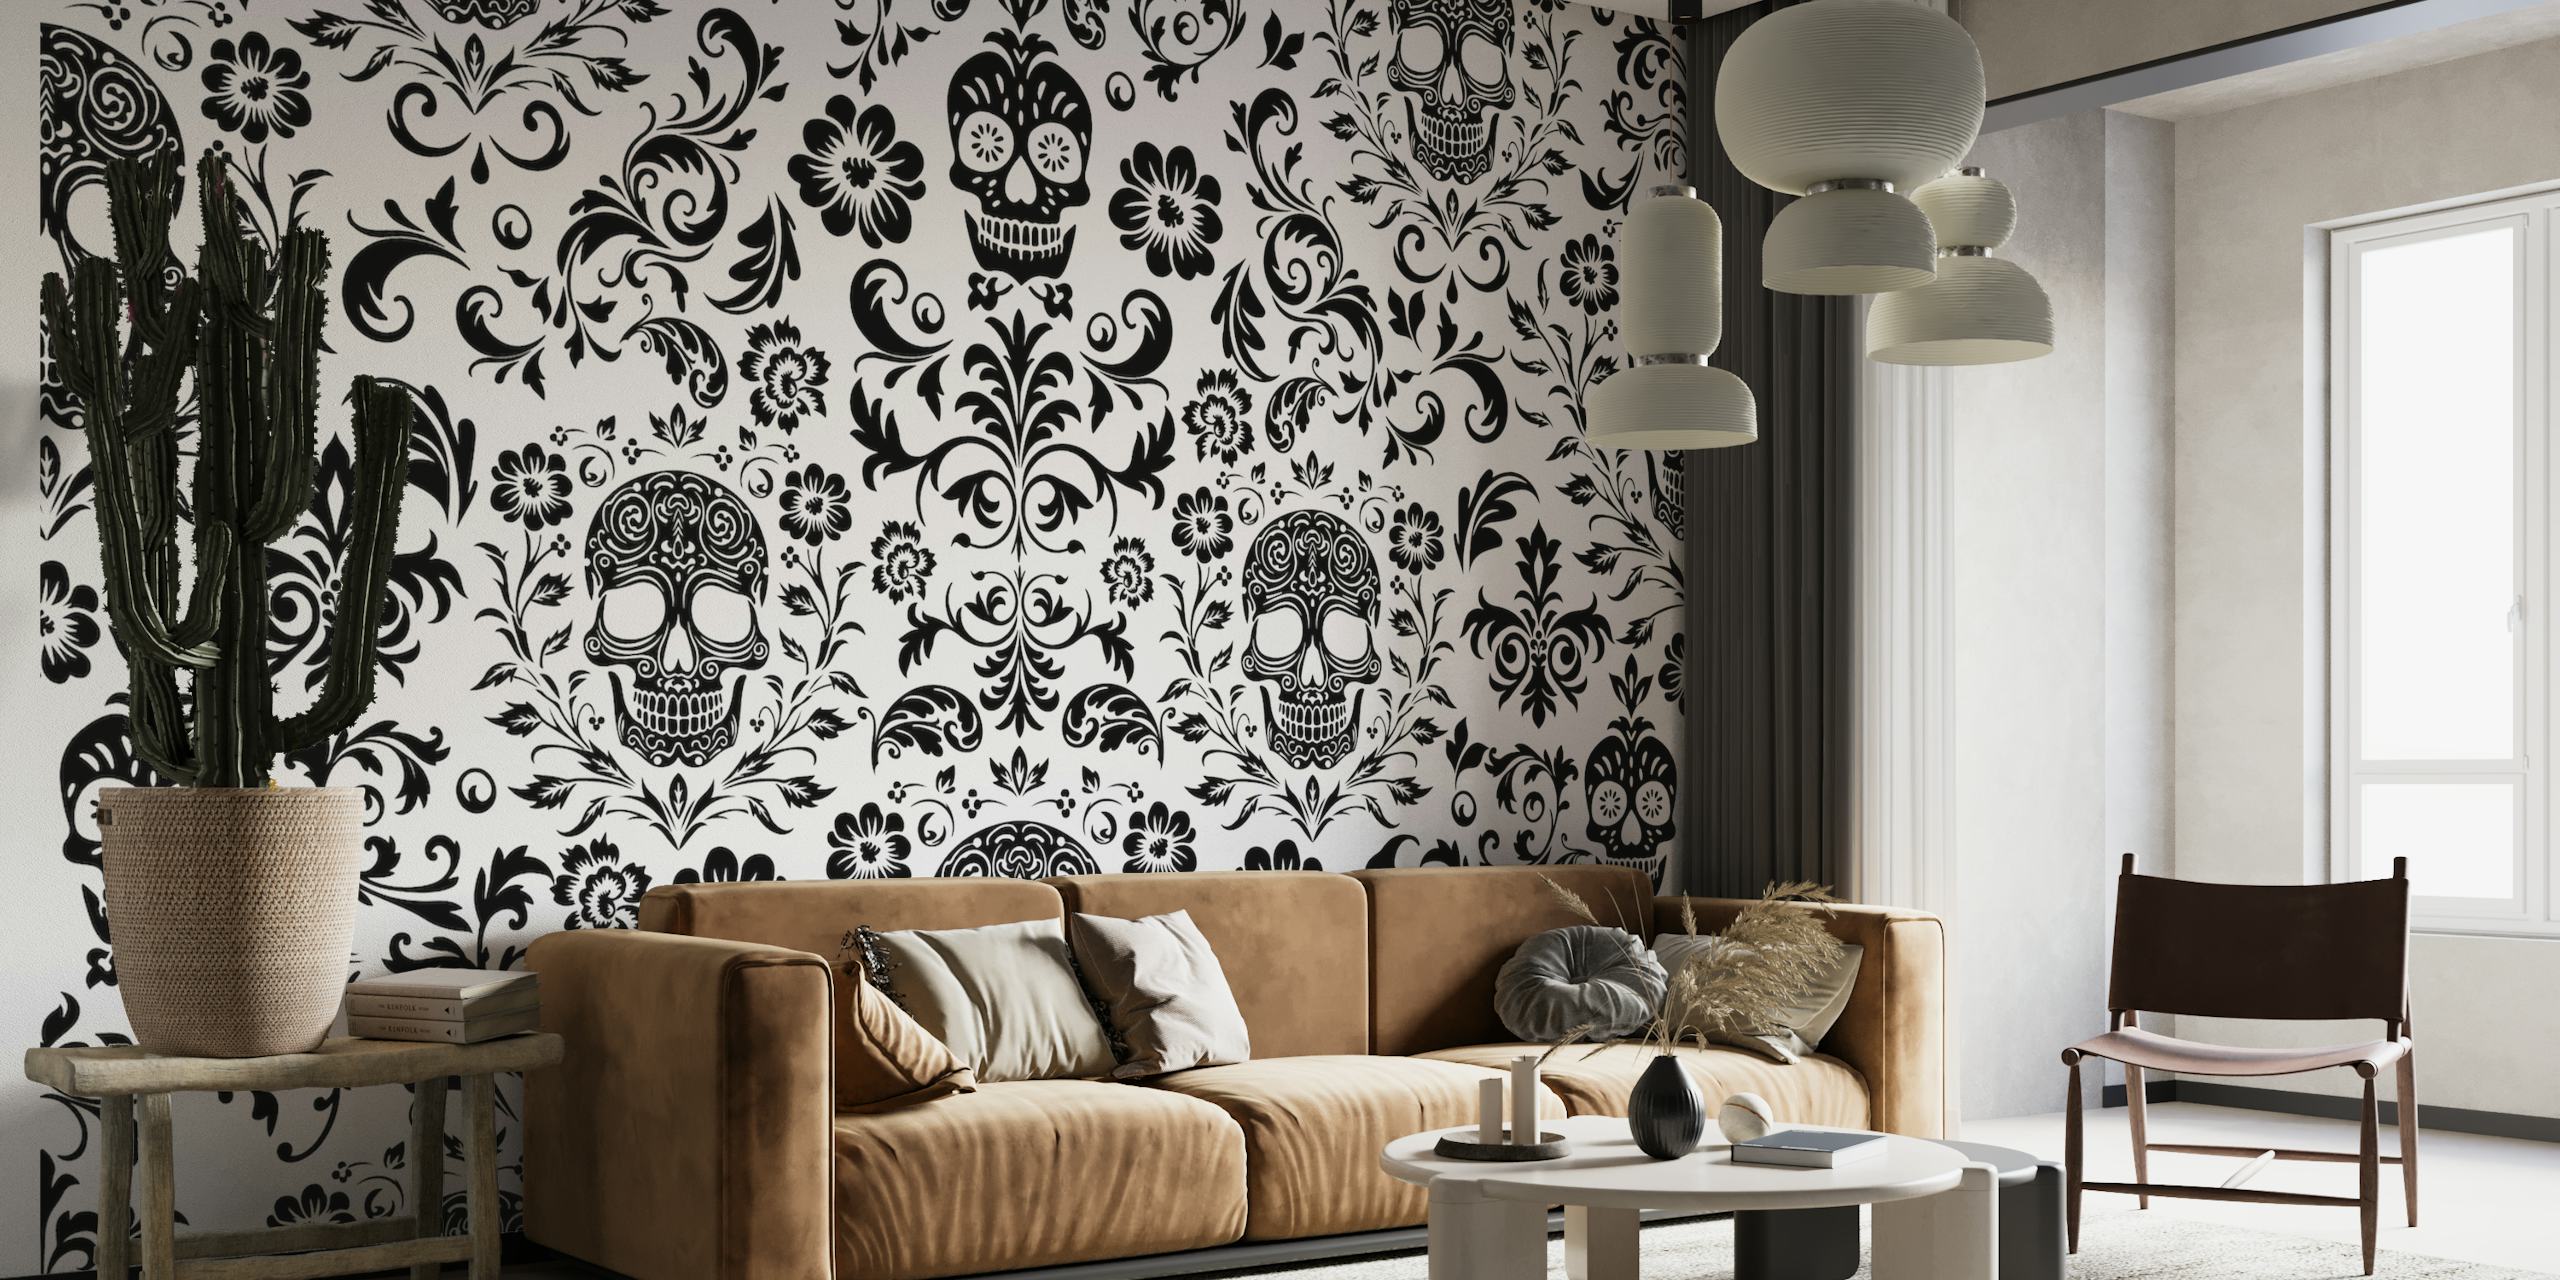 Mystisches makaberes Damast-Wandbild in Schwarz und Weiß mit Totenkopfmotiven und Blumenmustern